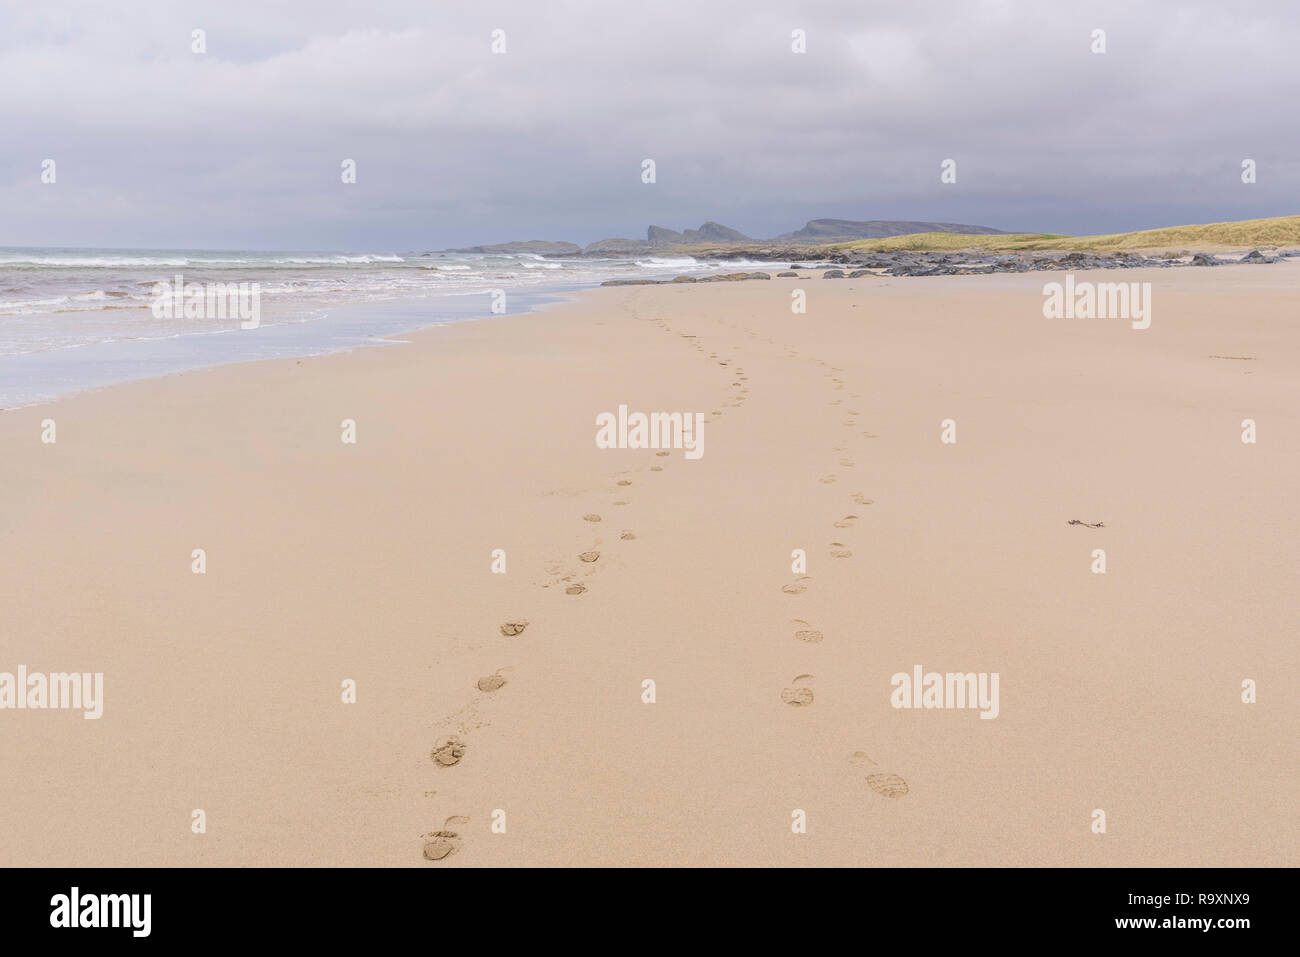 Des empreintes de pas dans le sable de La Baie, Fleisgein Saligo Traigh Mhor beach, Rhinns d'Islay, Hébrides intérieures, ARGYLL & BUTE, Ecosse Banque D'Images